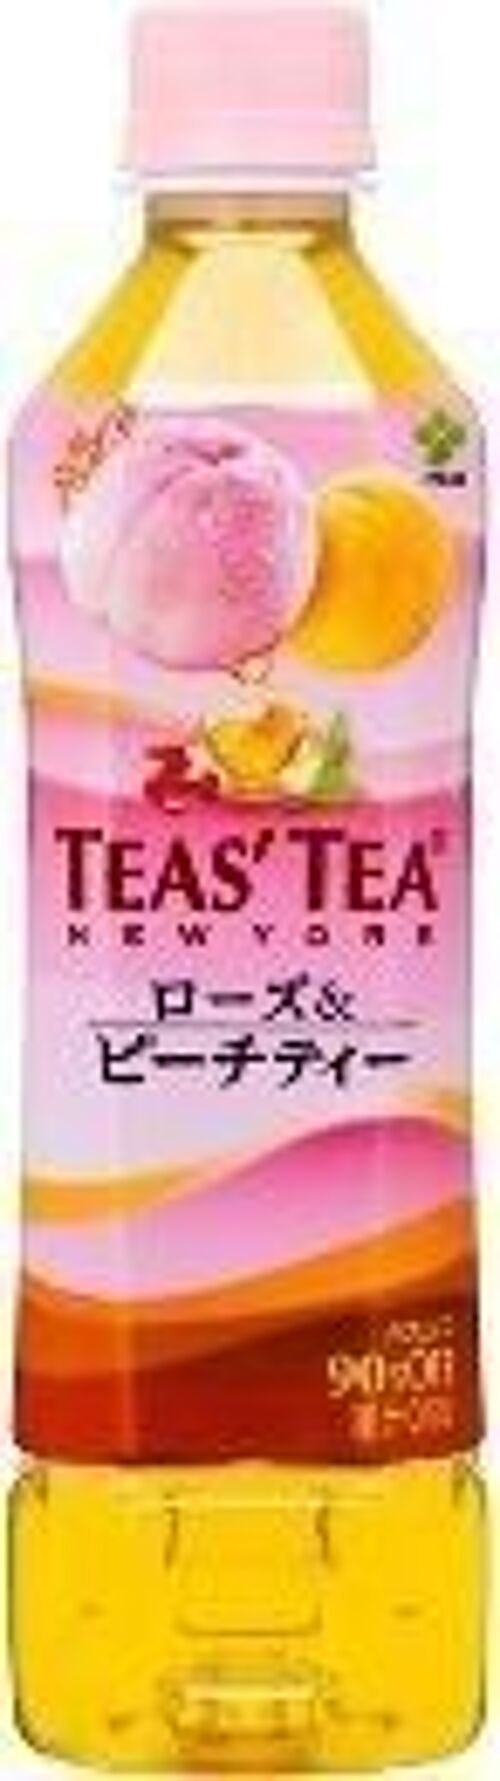 Teas' Tea Peach Tea
伊藤園蜜桃紅茶